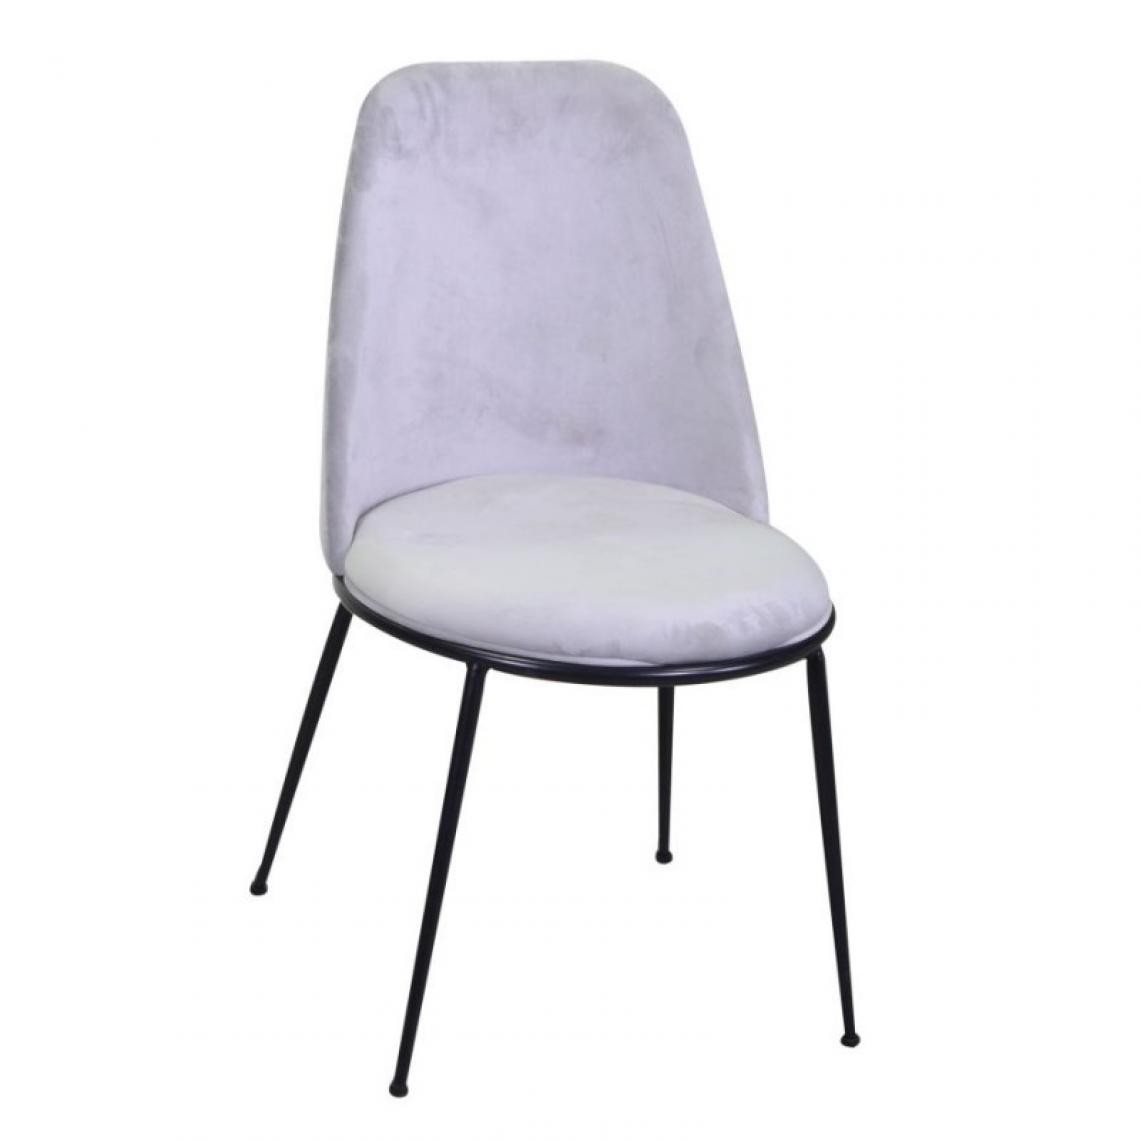 Webmarketpoint - Chaise design en velours et métal gris rotterdam - Chaises